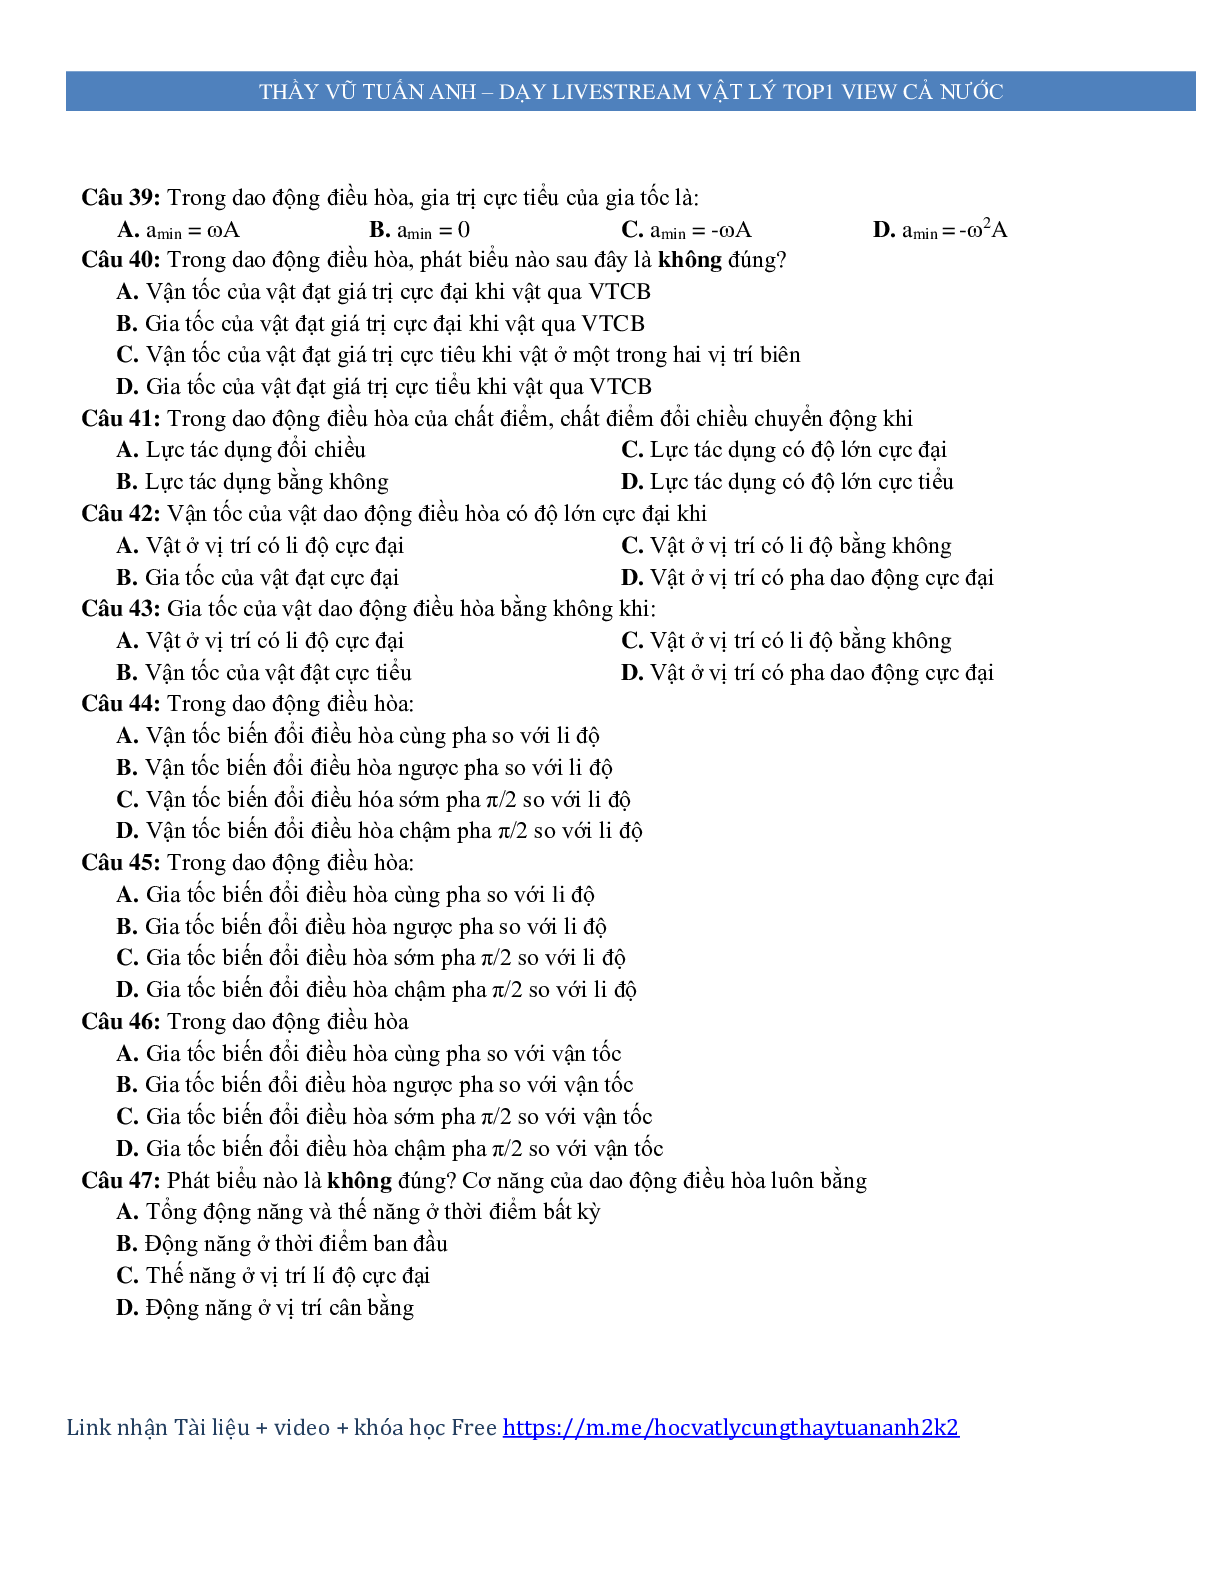 600 câu trắc nghiệm lý thuyết môn Vật lý ôn thi THPT Quốc Gia (trang 6)